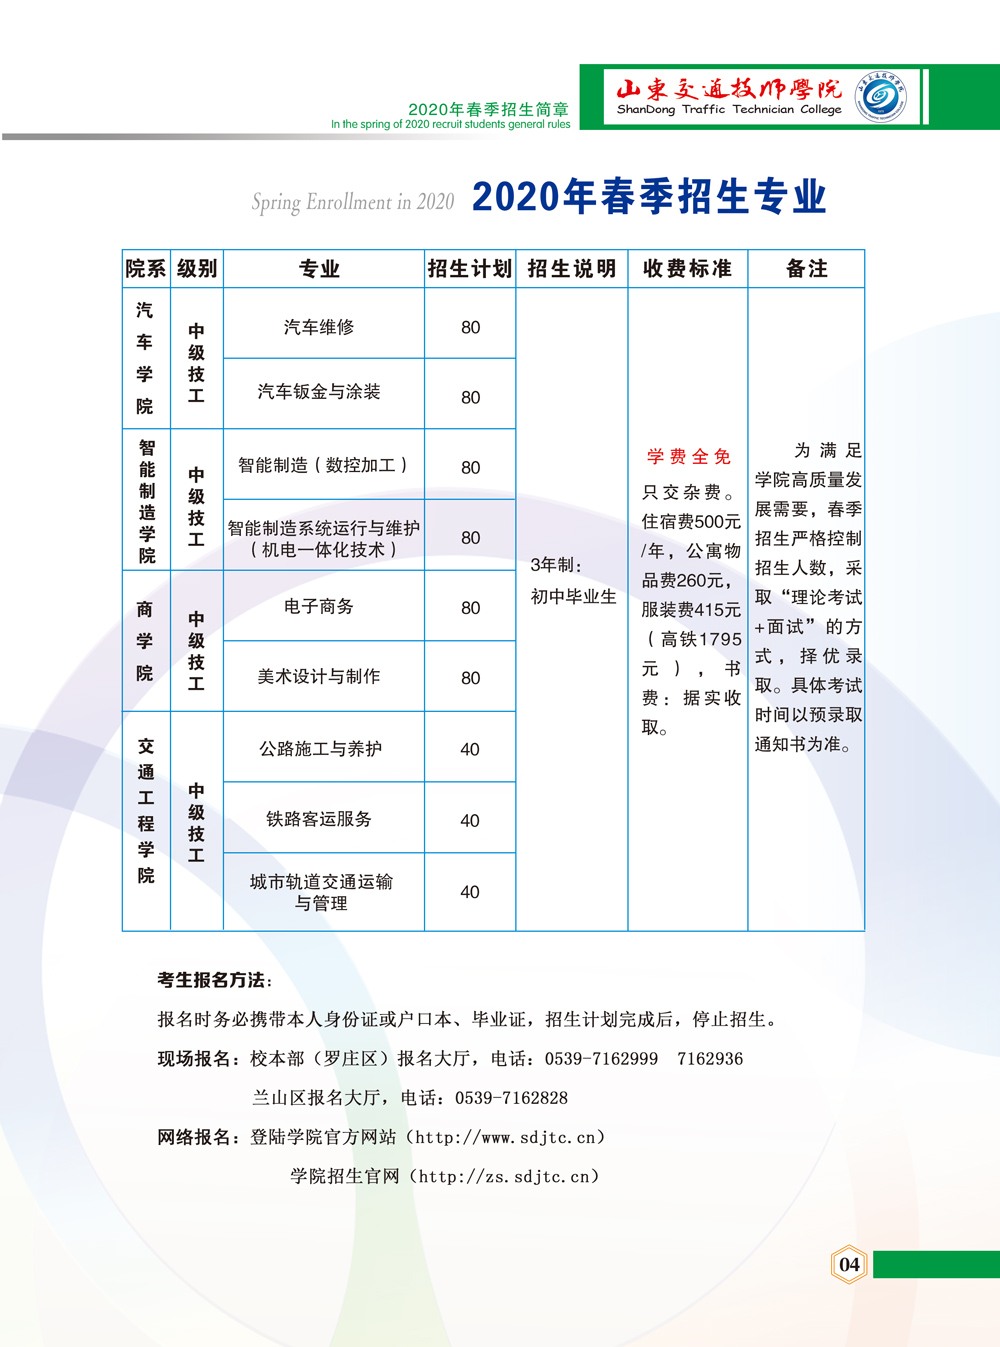 山东交通技师学院2020年春季招生简章